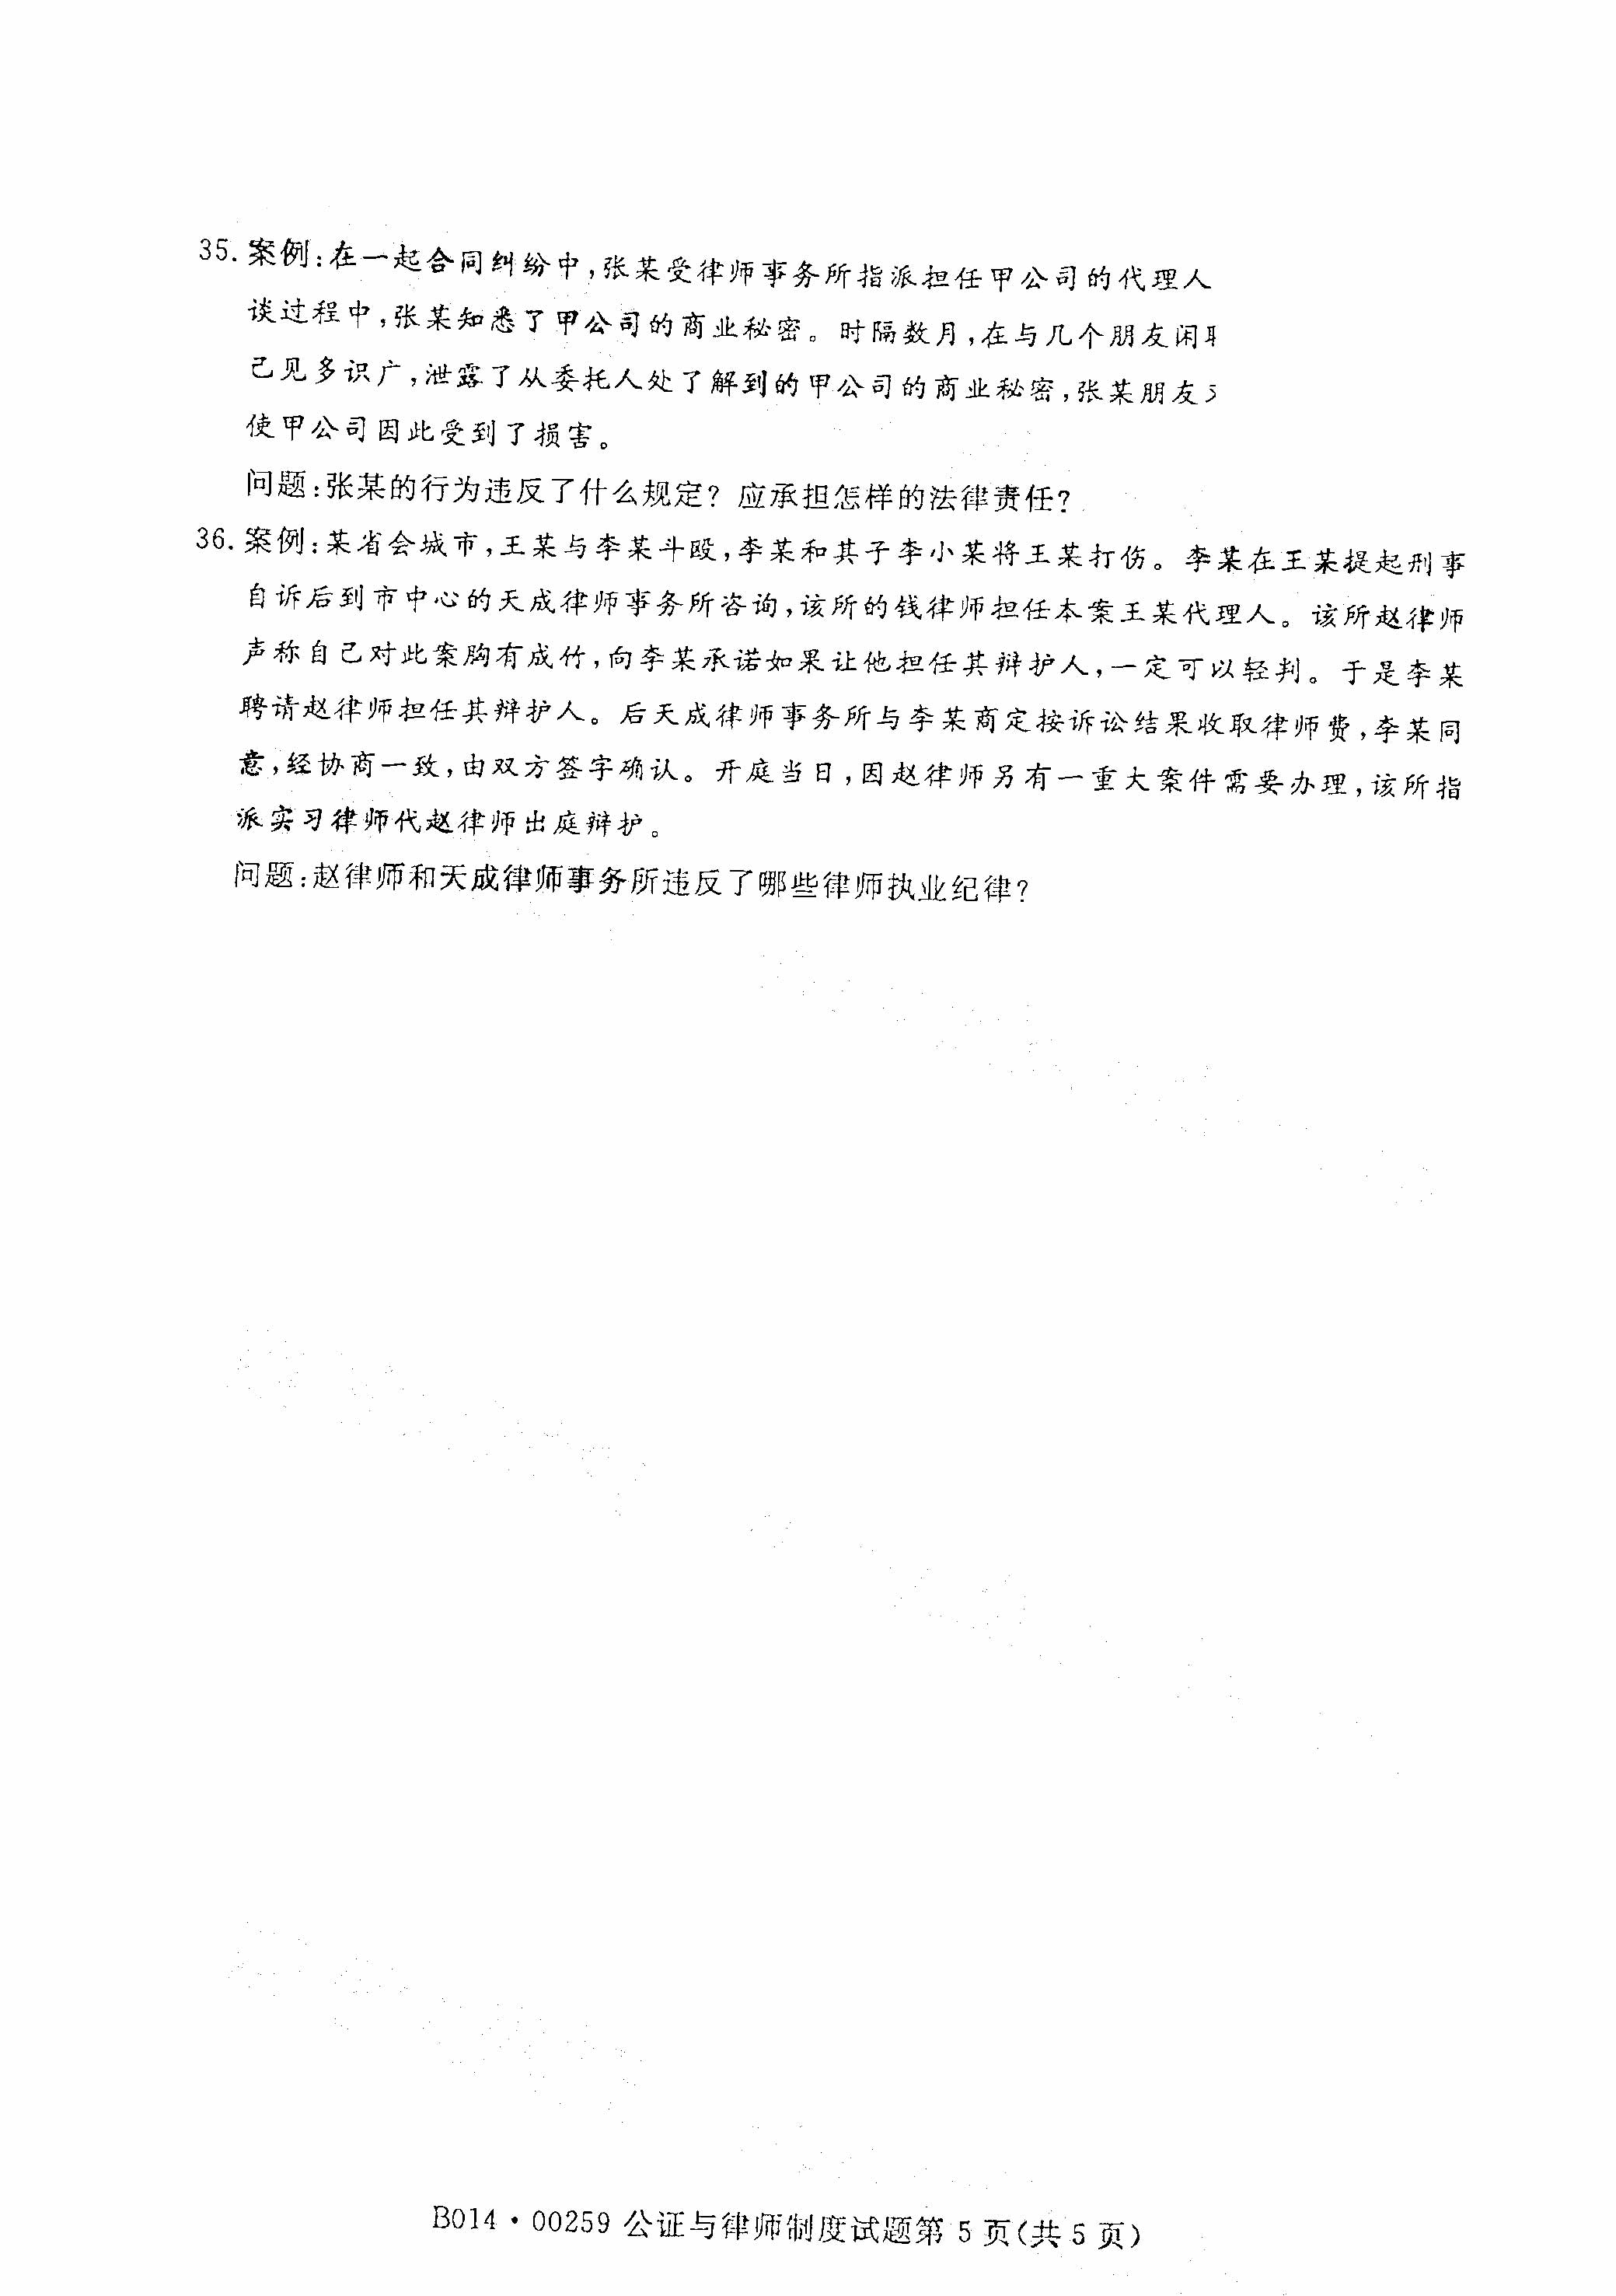 贵州自考2021年4月自考00259公证与律师制度真题试卷